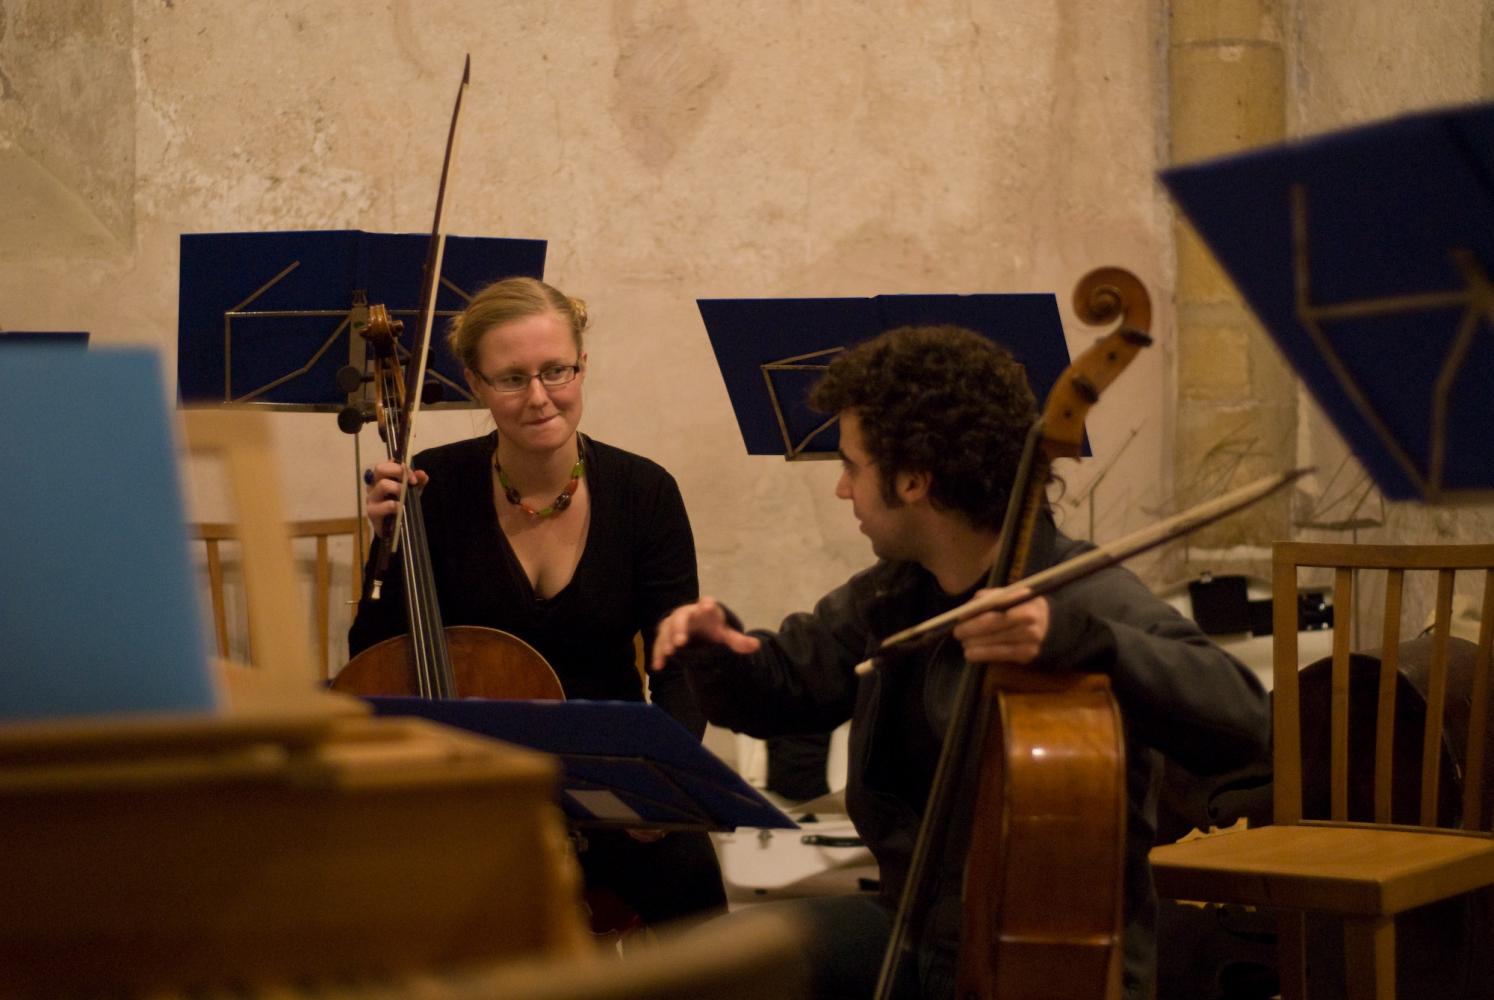 Les deux violoncellistes semblent discuter des détails techniques pendant une pause de la répétition générale dans l'église. Echternach, Luxembourg, octobre 2009.